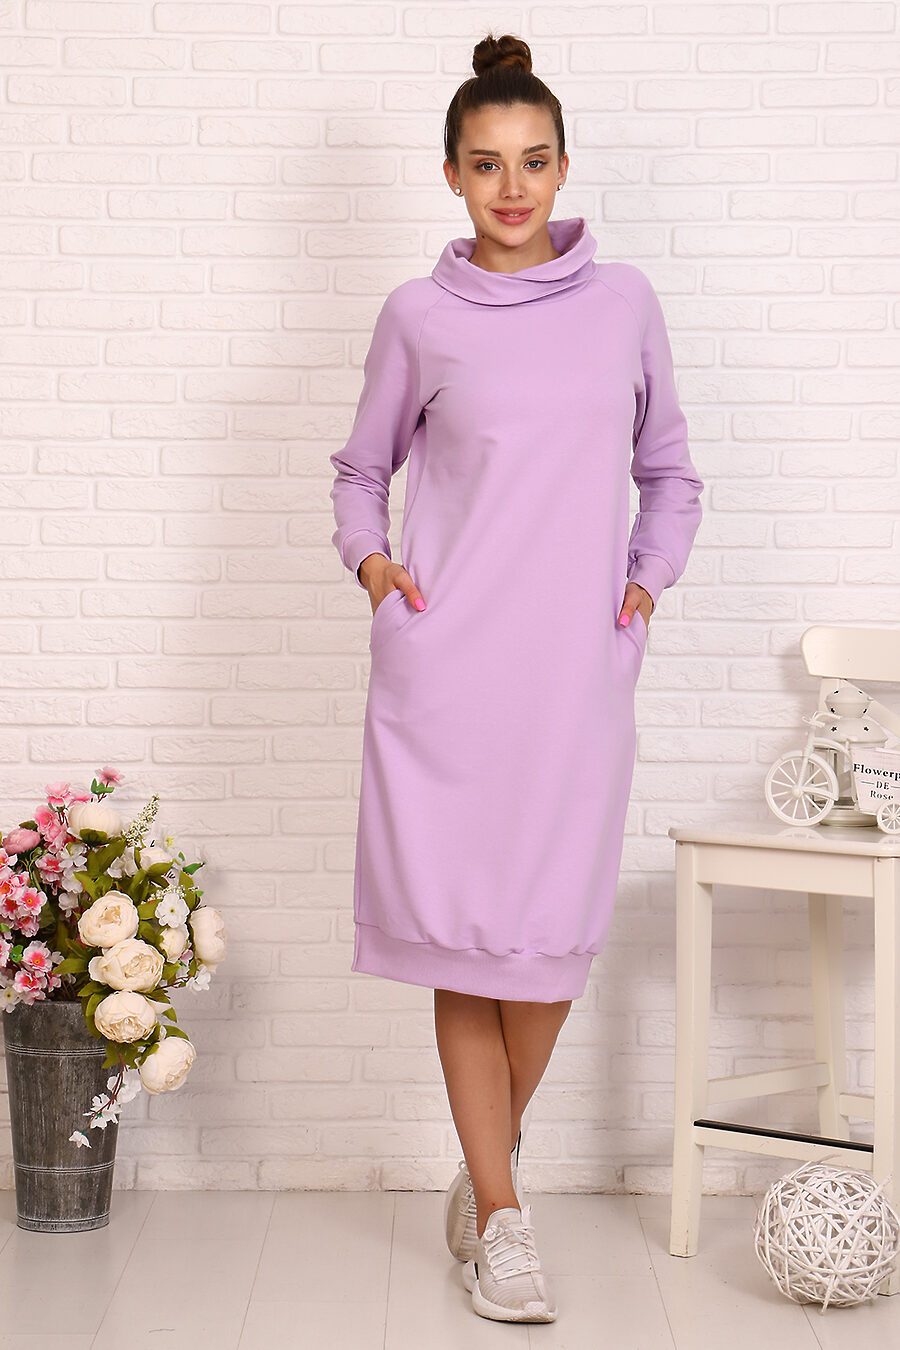 Платье 24227 для женщин НАТАЛИ 717756 купить оптом от производителя. Совместная покупка женской одежды в OptMoyo